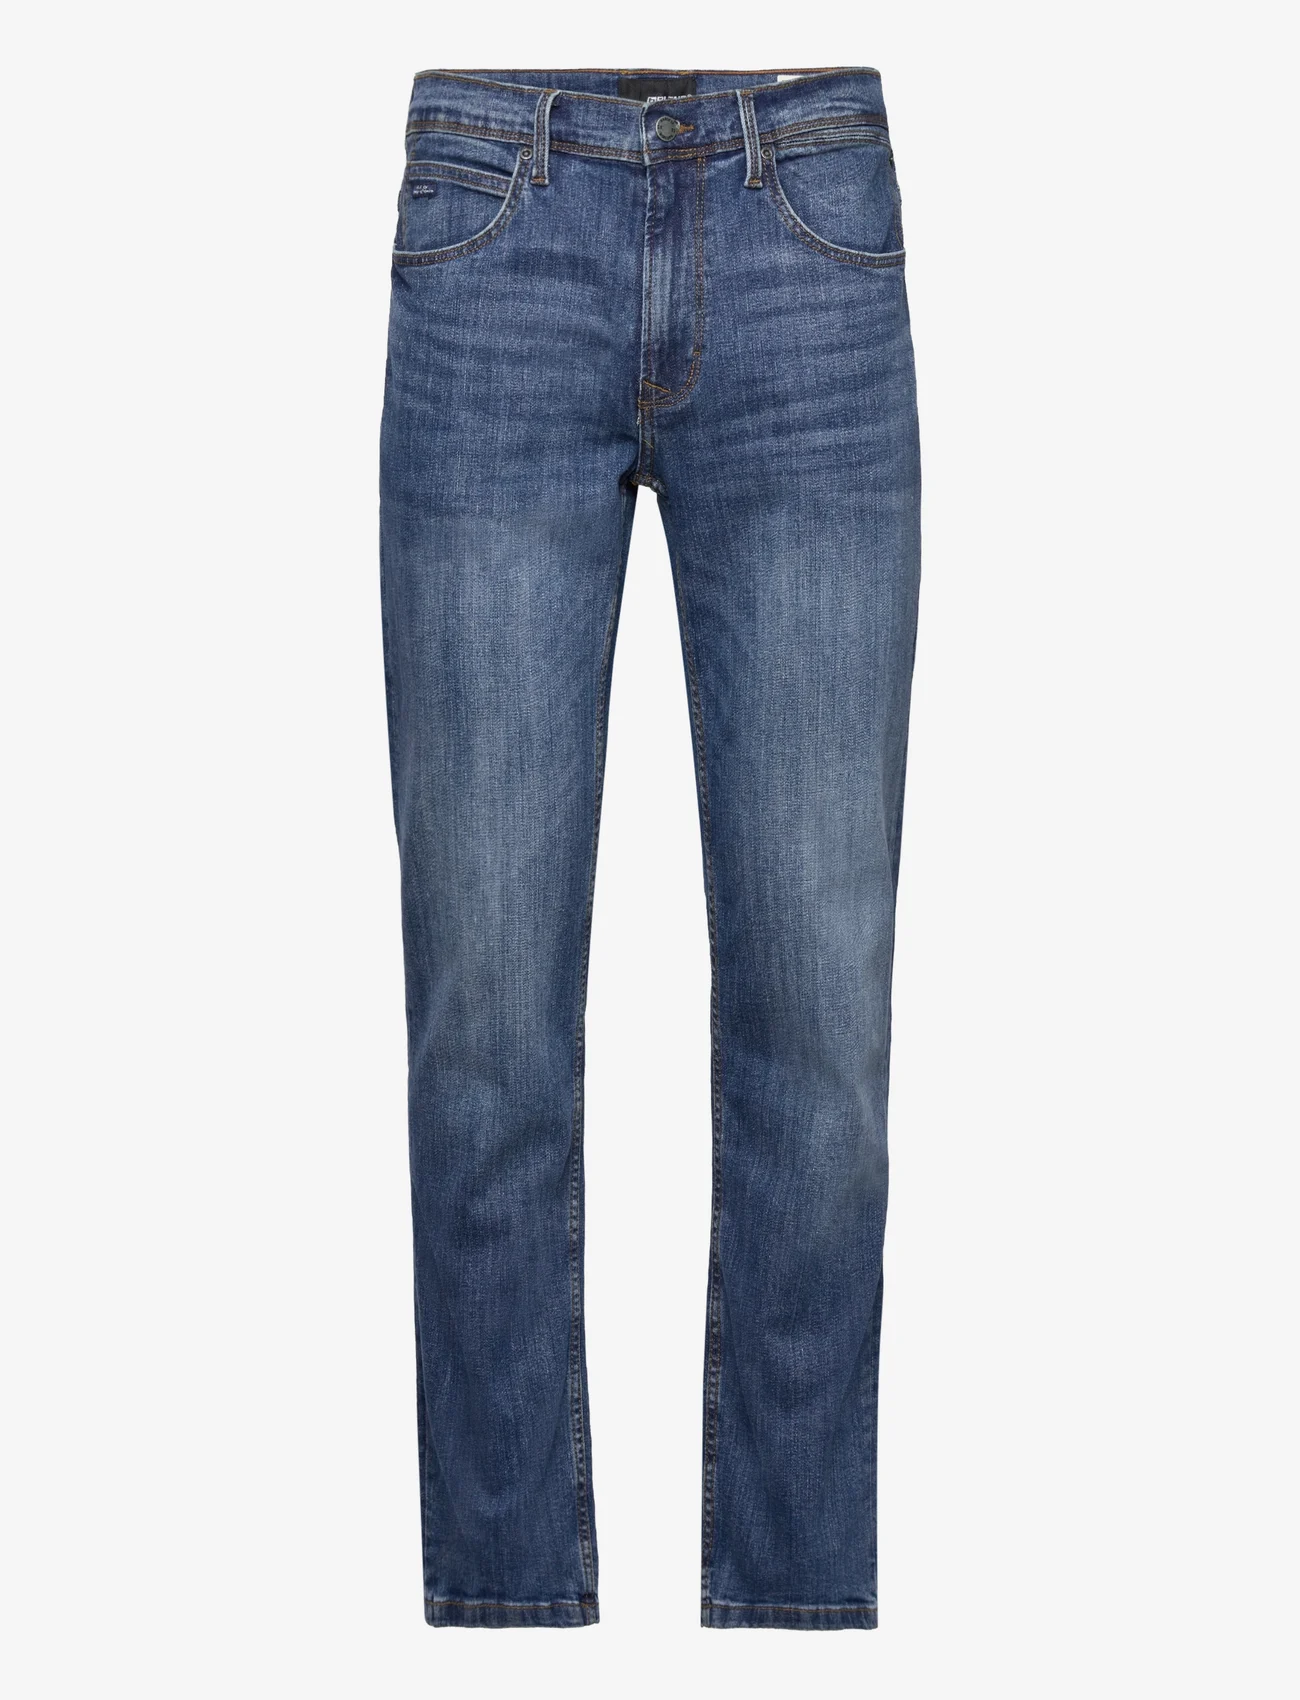 Blend - Rock fit - regular jeans - middle blue - 34 - 0